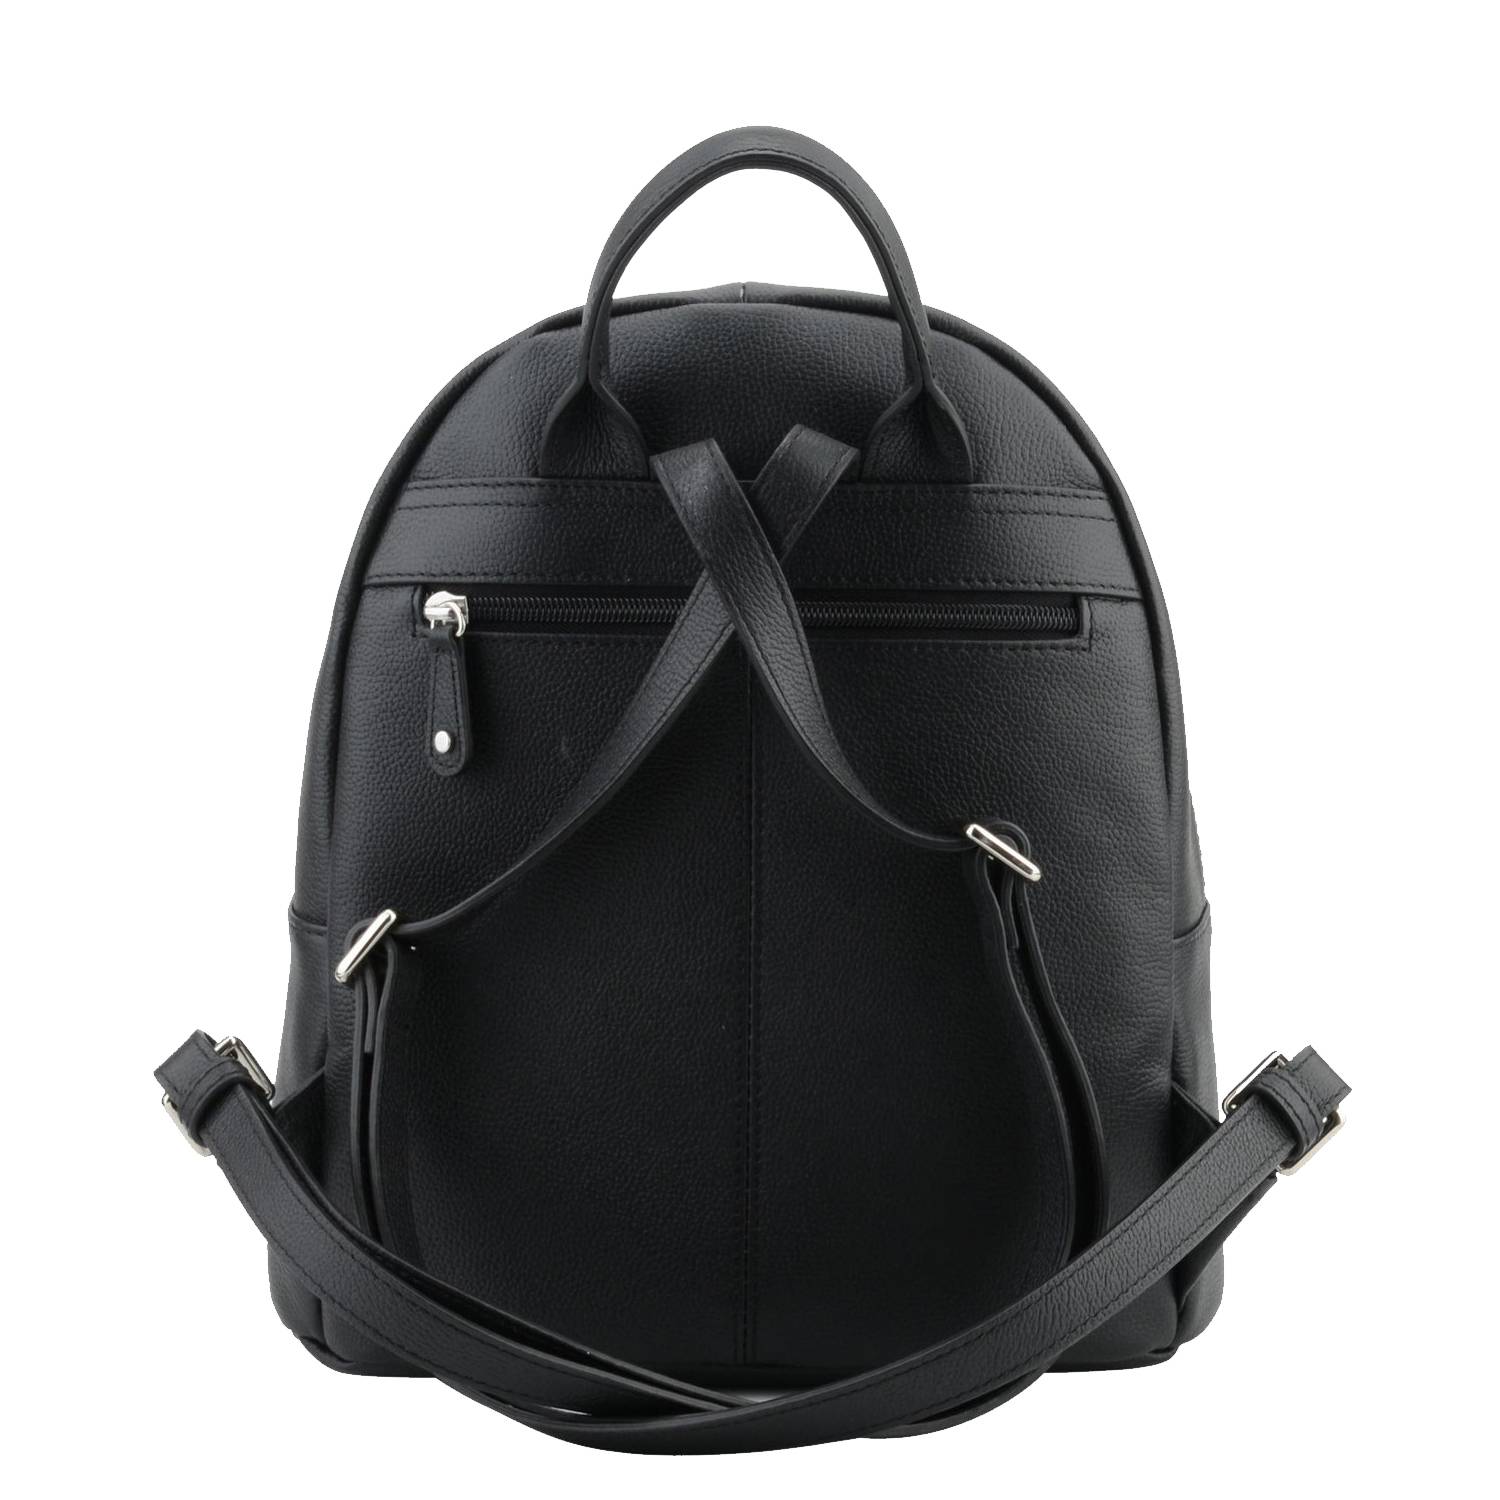 Mini sac à dos Francinel zippé Tiana 22328 NR couleur noir, vue de dos